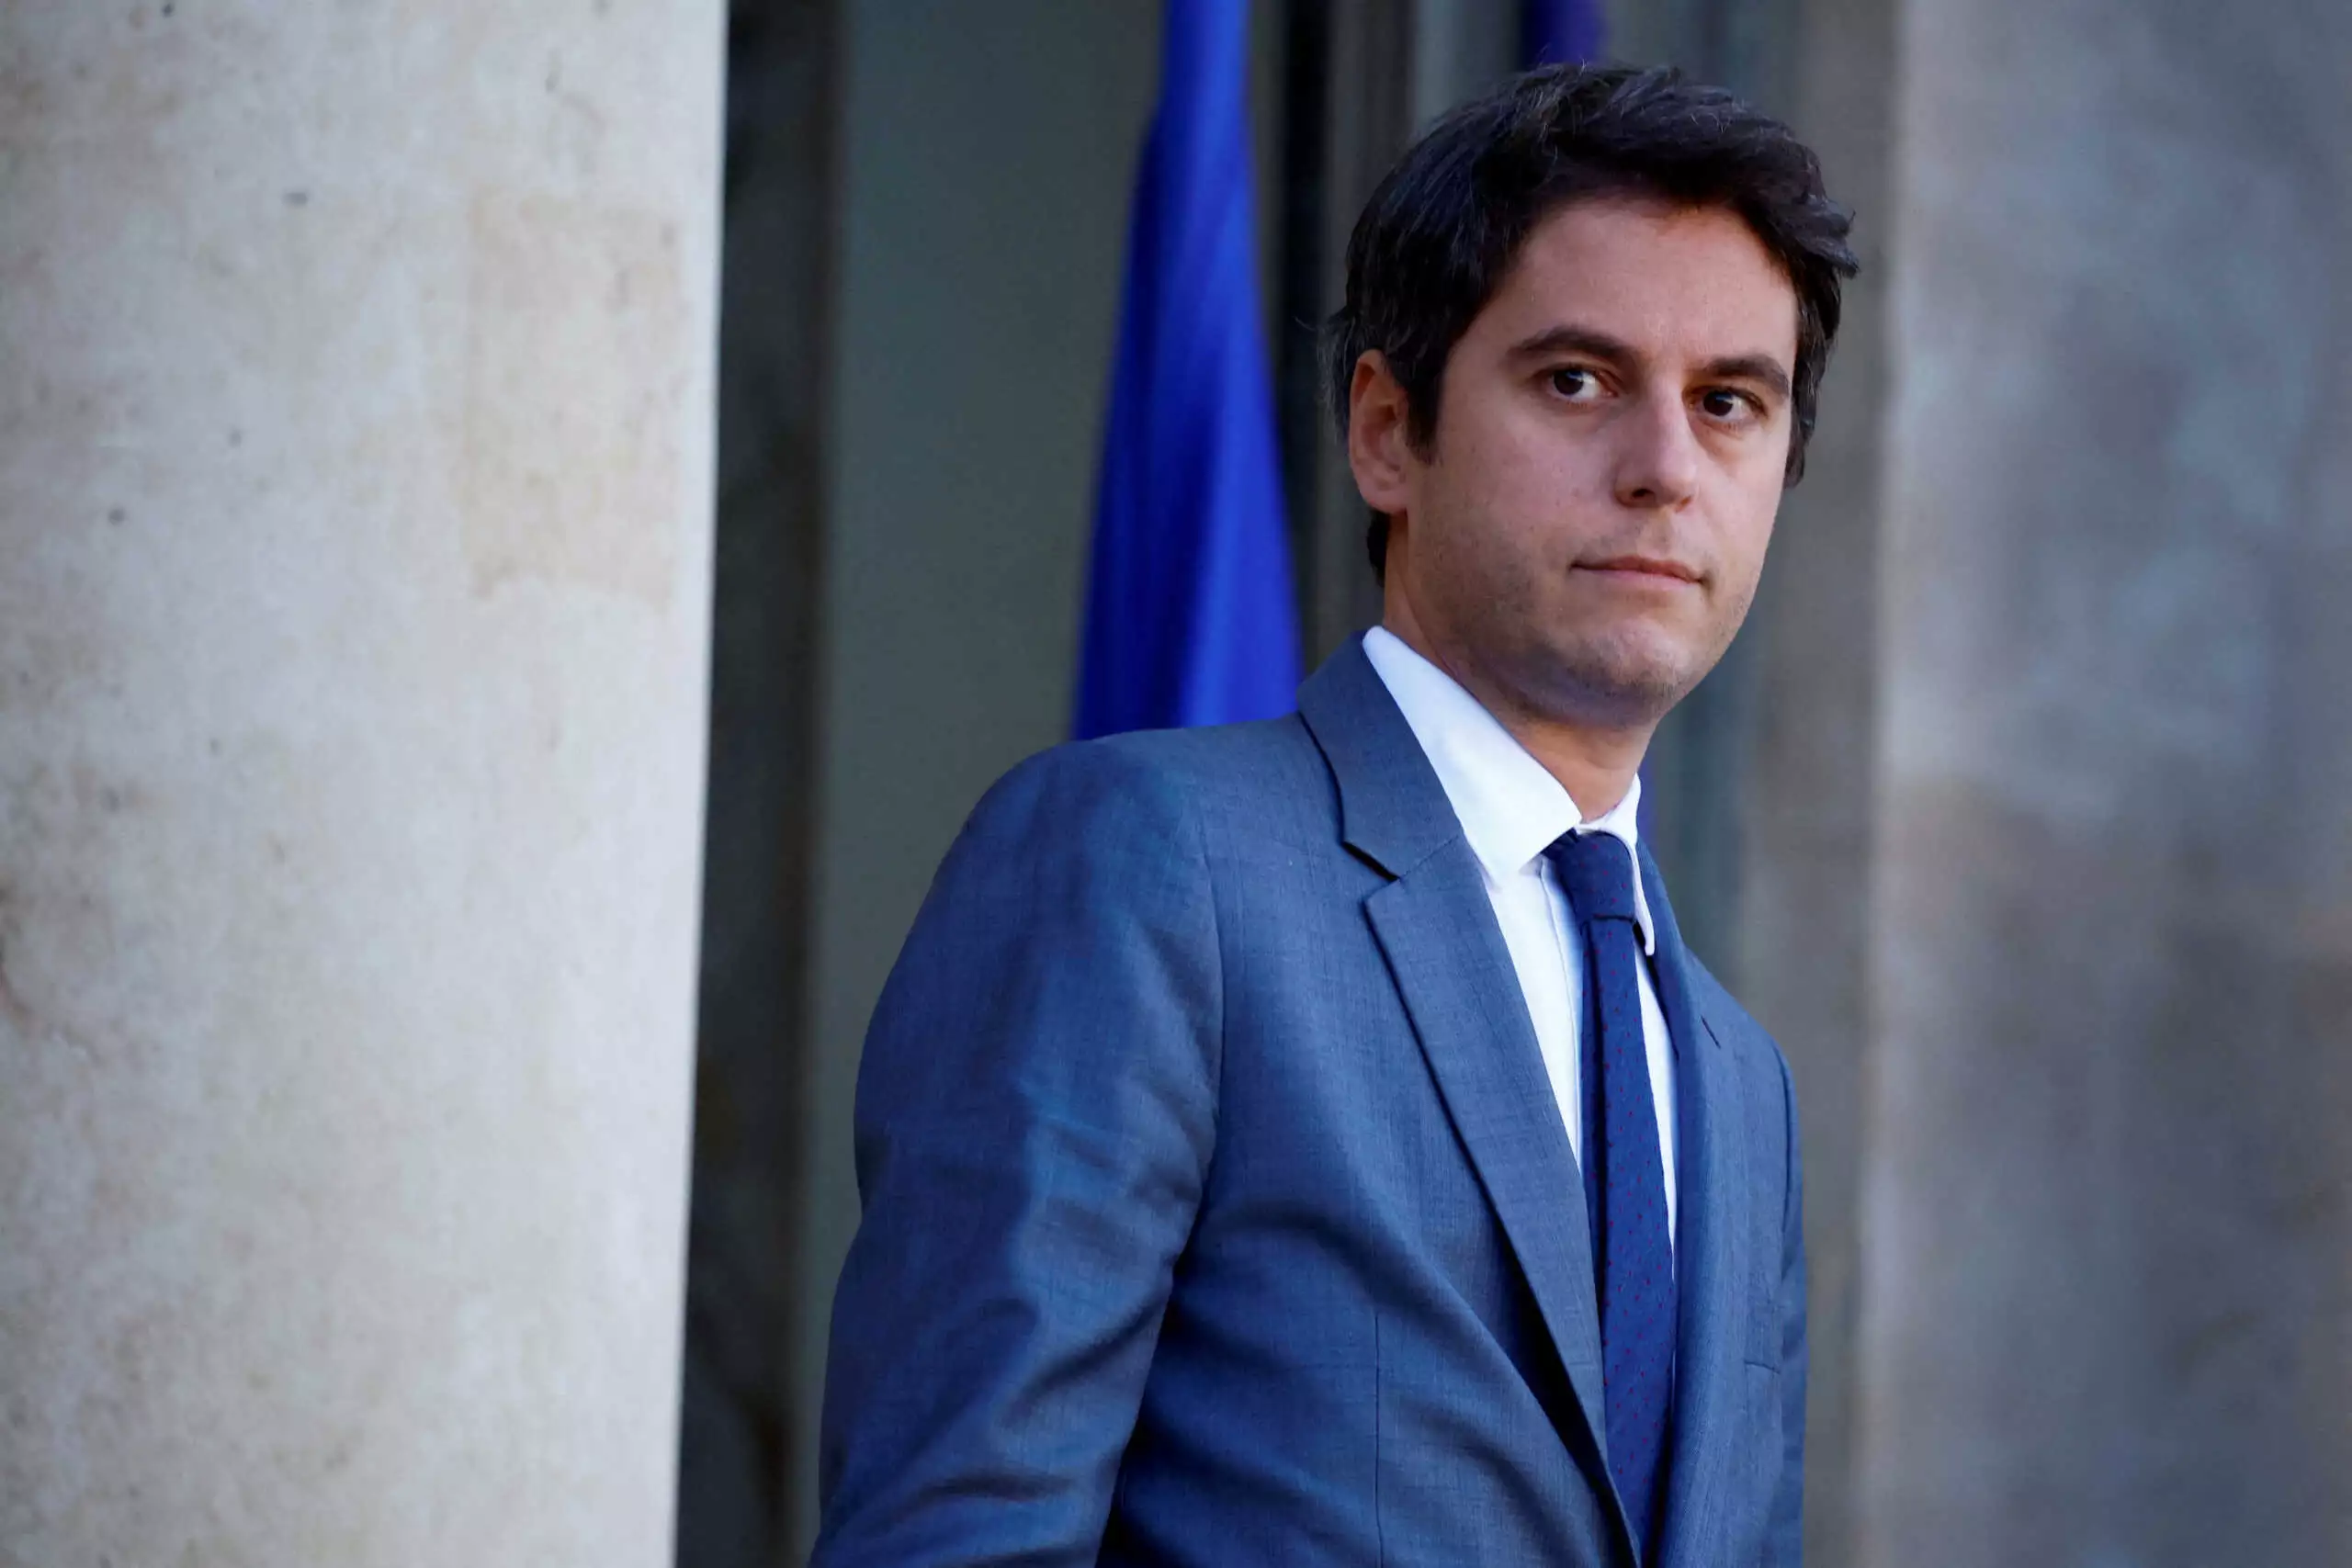 Φήμες ότι ο νέος πρωθυπουργός της Γαλλίας εκτός από ομοφυλόφιλος είναι και ναρκομανής (βίντεο)